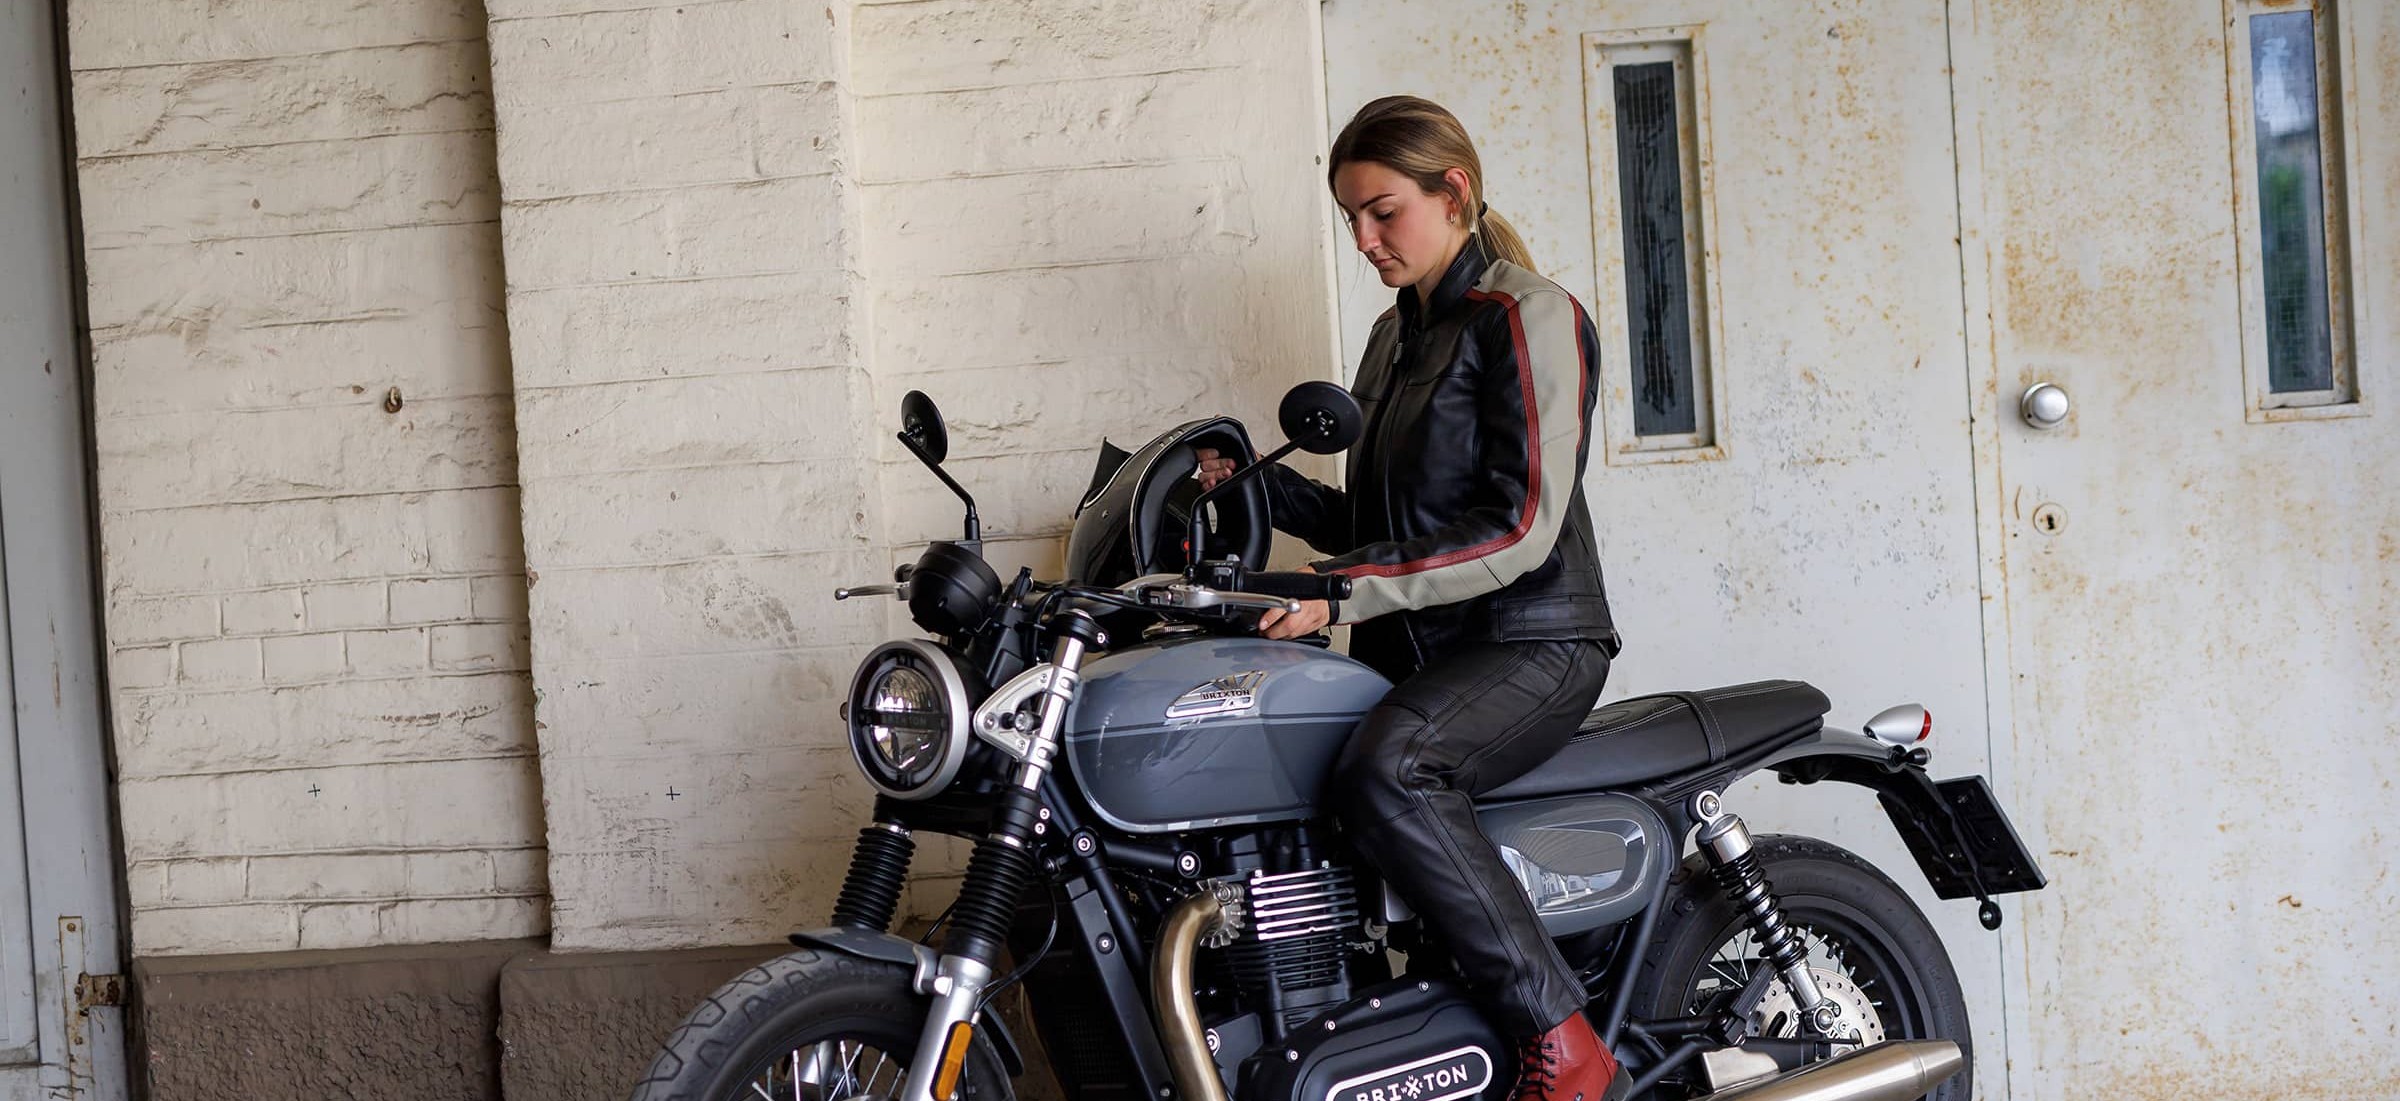 Motoradjacke für Frauen aus Leder